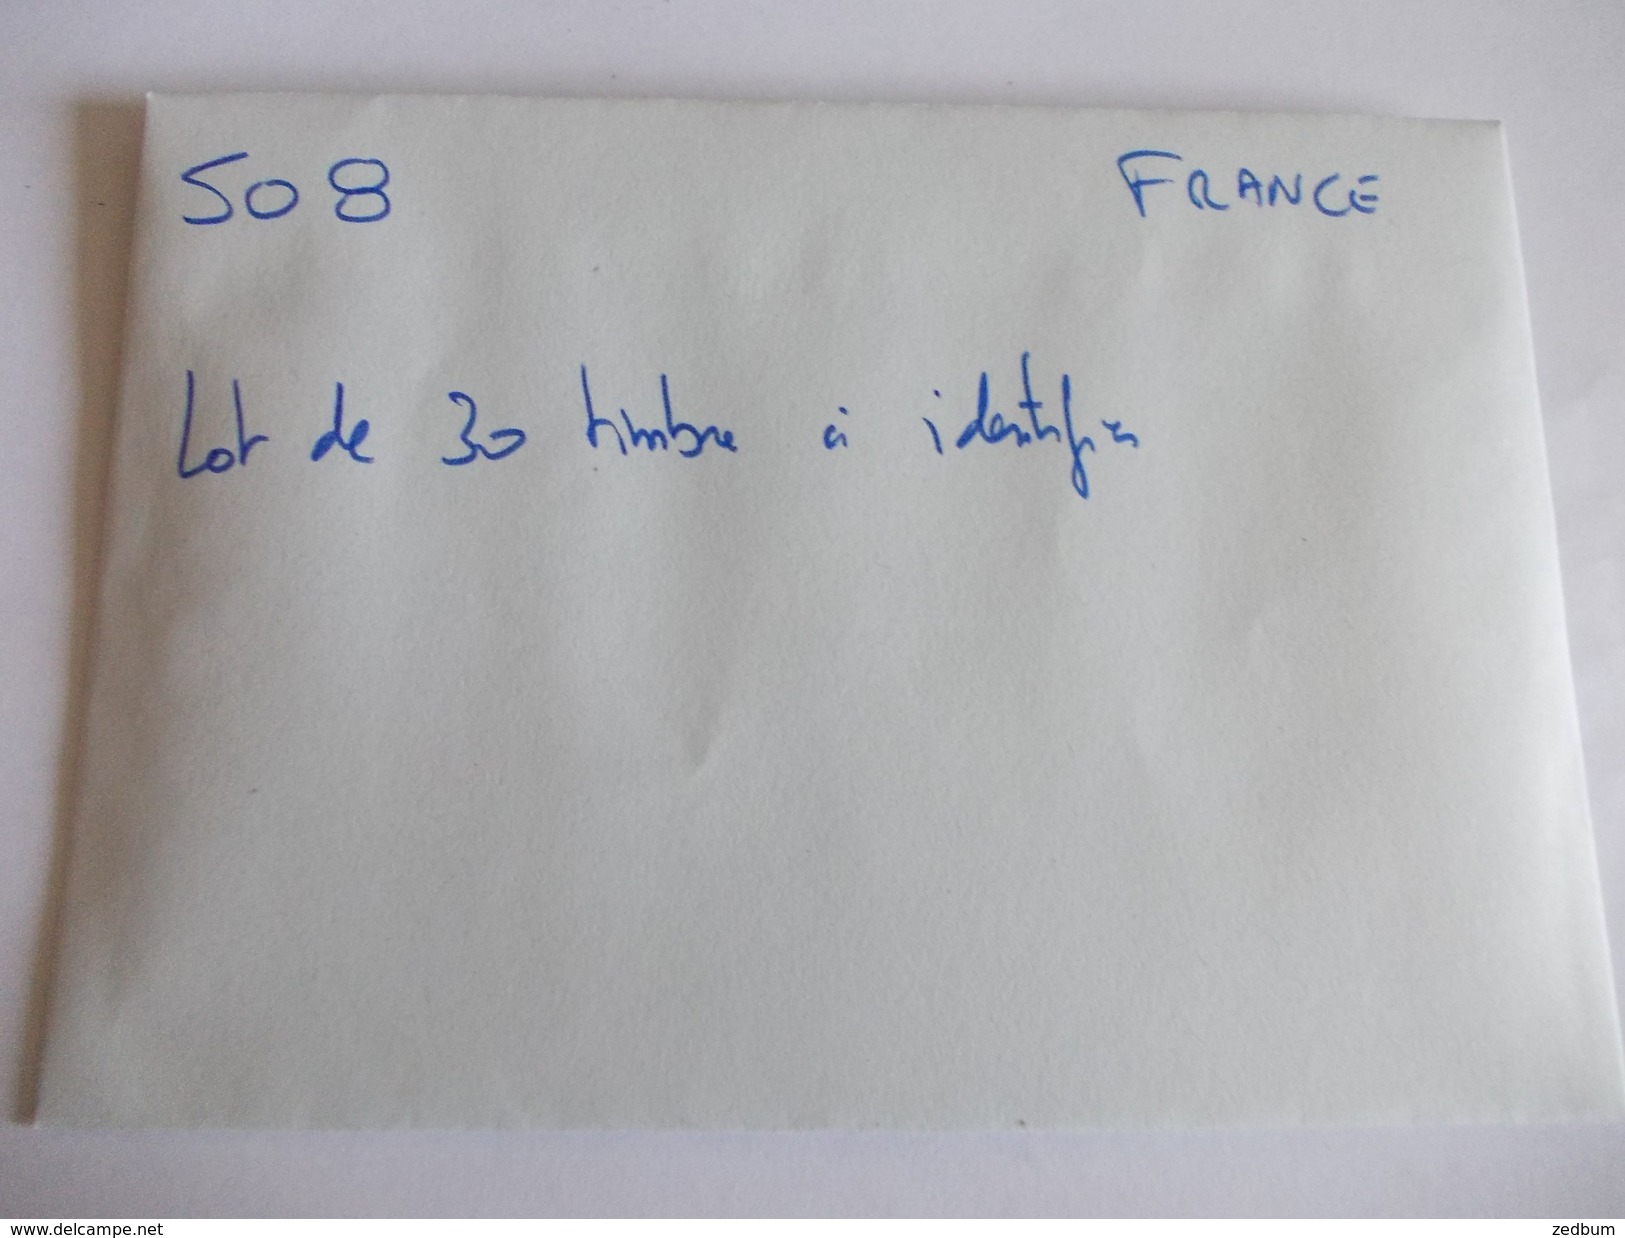 TIMBRE France Lot De 30 Timbres à Identifier N° 508 - Vrac (max 999 Timbres)